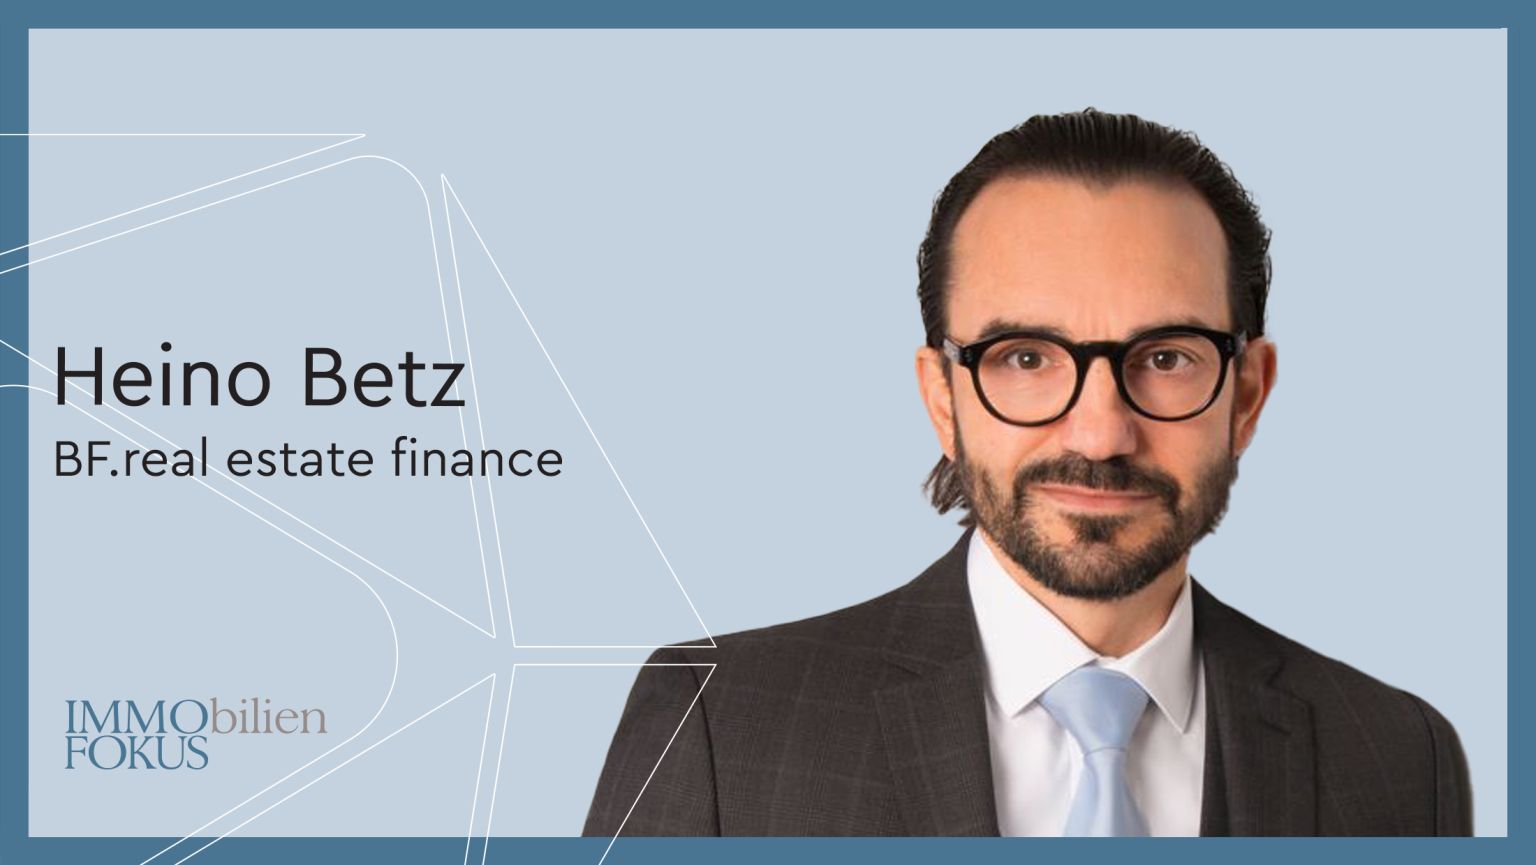 BF.real estate finance holt Heino Betz als Managing Director und Head of Lending